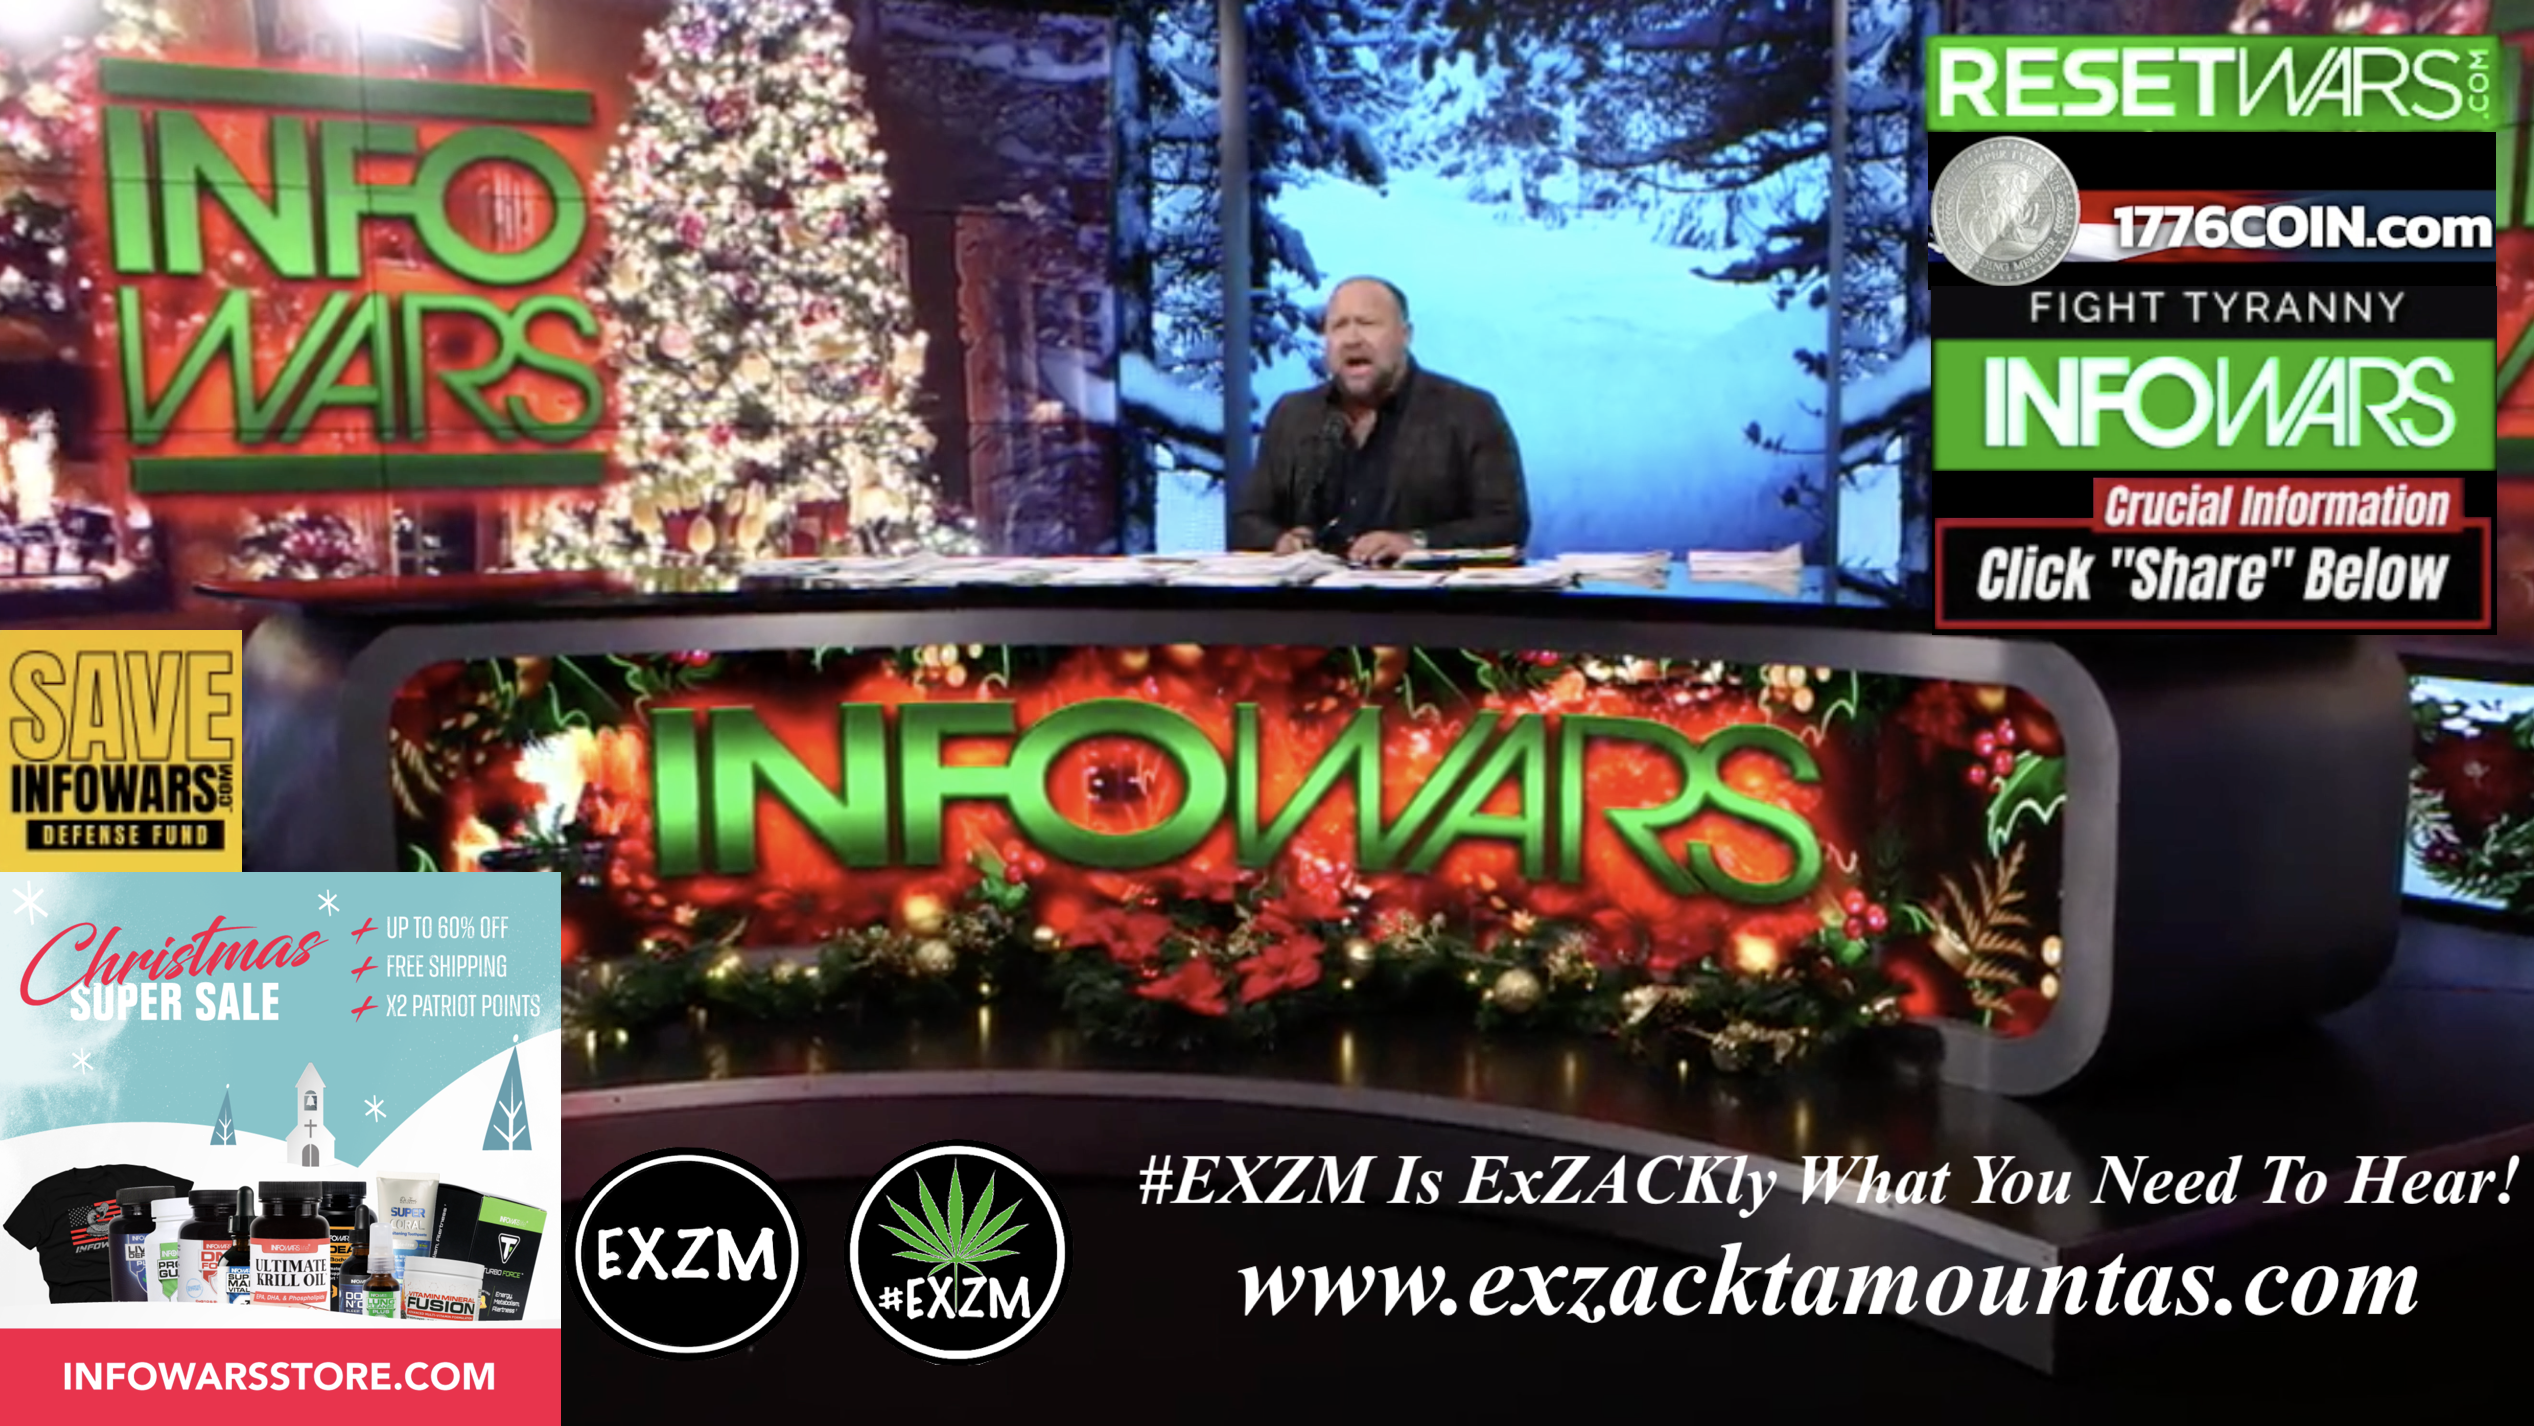 Alex Jones Live In Infowars Studio 1776 Coin Save Infowars ResetWars EXZM Zack Mount December 15th 2021 copy